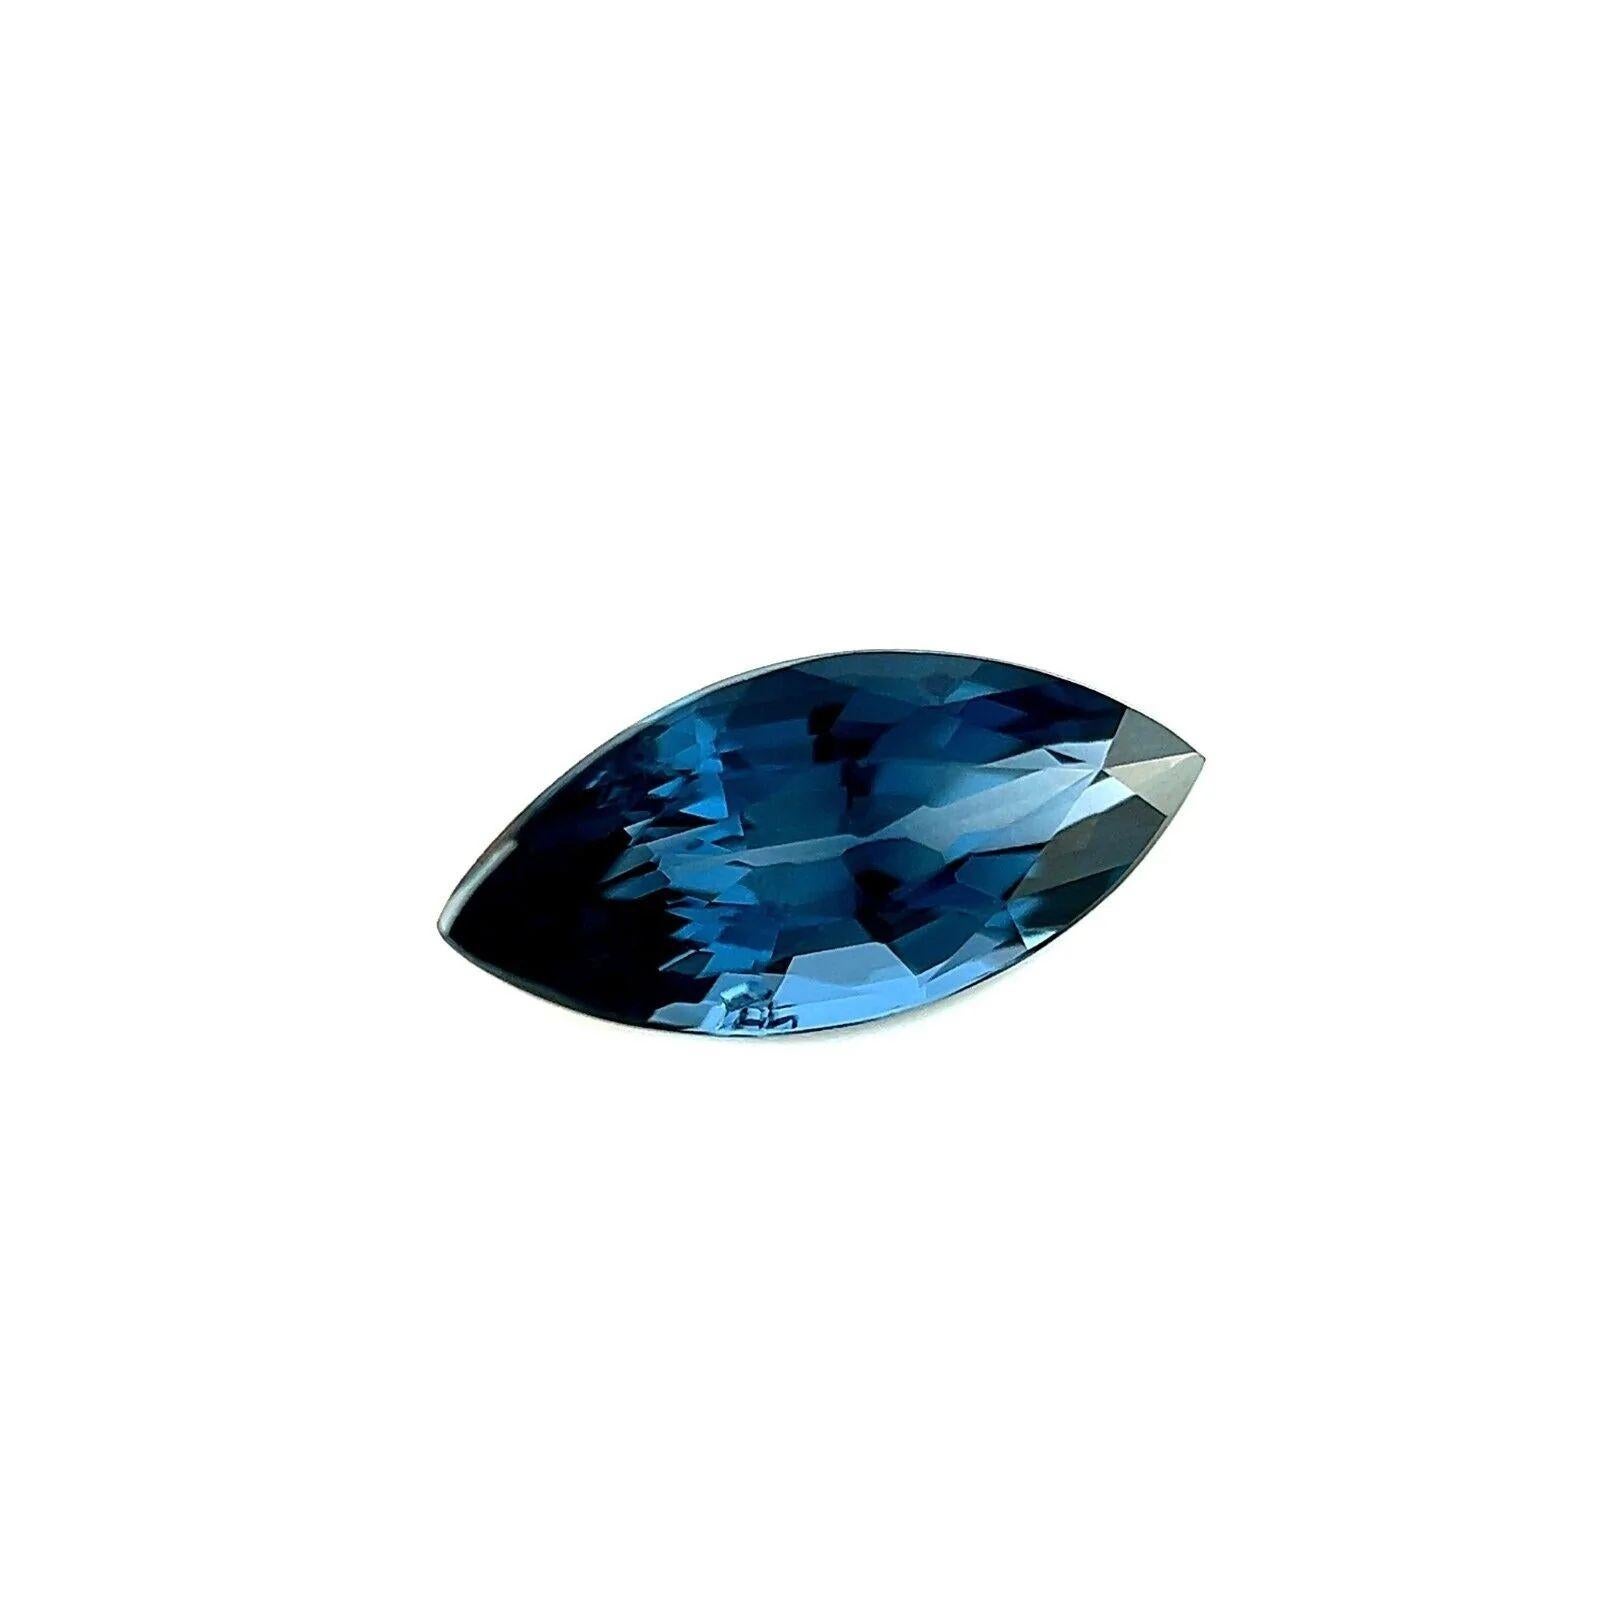 1.05ct Spinelle bleu fin taille marquise pierre précieuse rare 9.6x4.4mm Loose rare Gemstone

Fine pierre précieuse Spinelle bleu vif naturelle.
Spinelle de 1,05 carat d'une belle couleur bleu vif et d'une bonne clarté. Pierre propre avec seulement